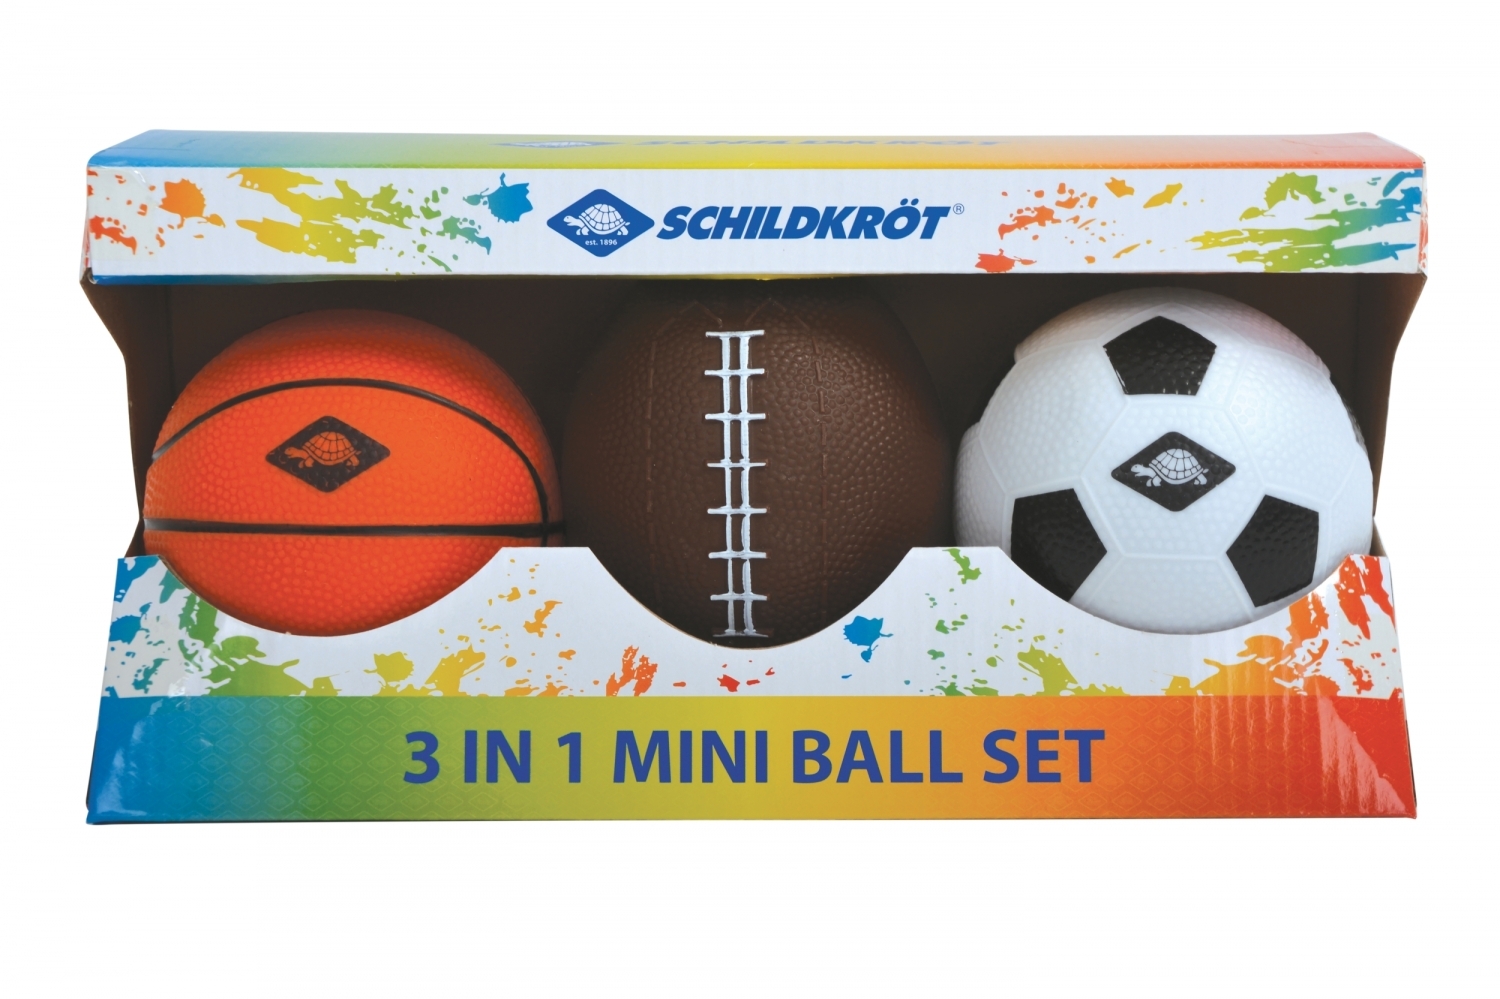 3 in 1 Mini Ball-Set